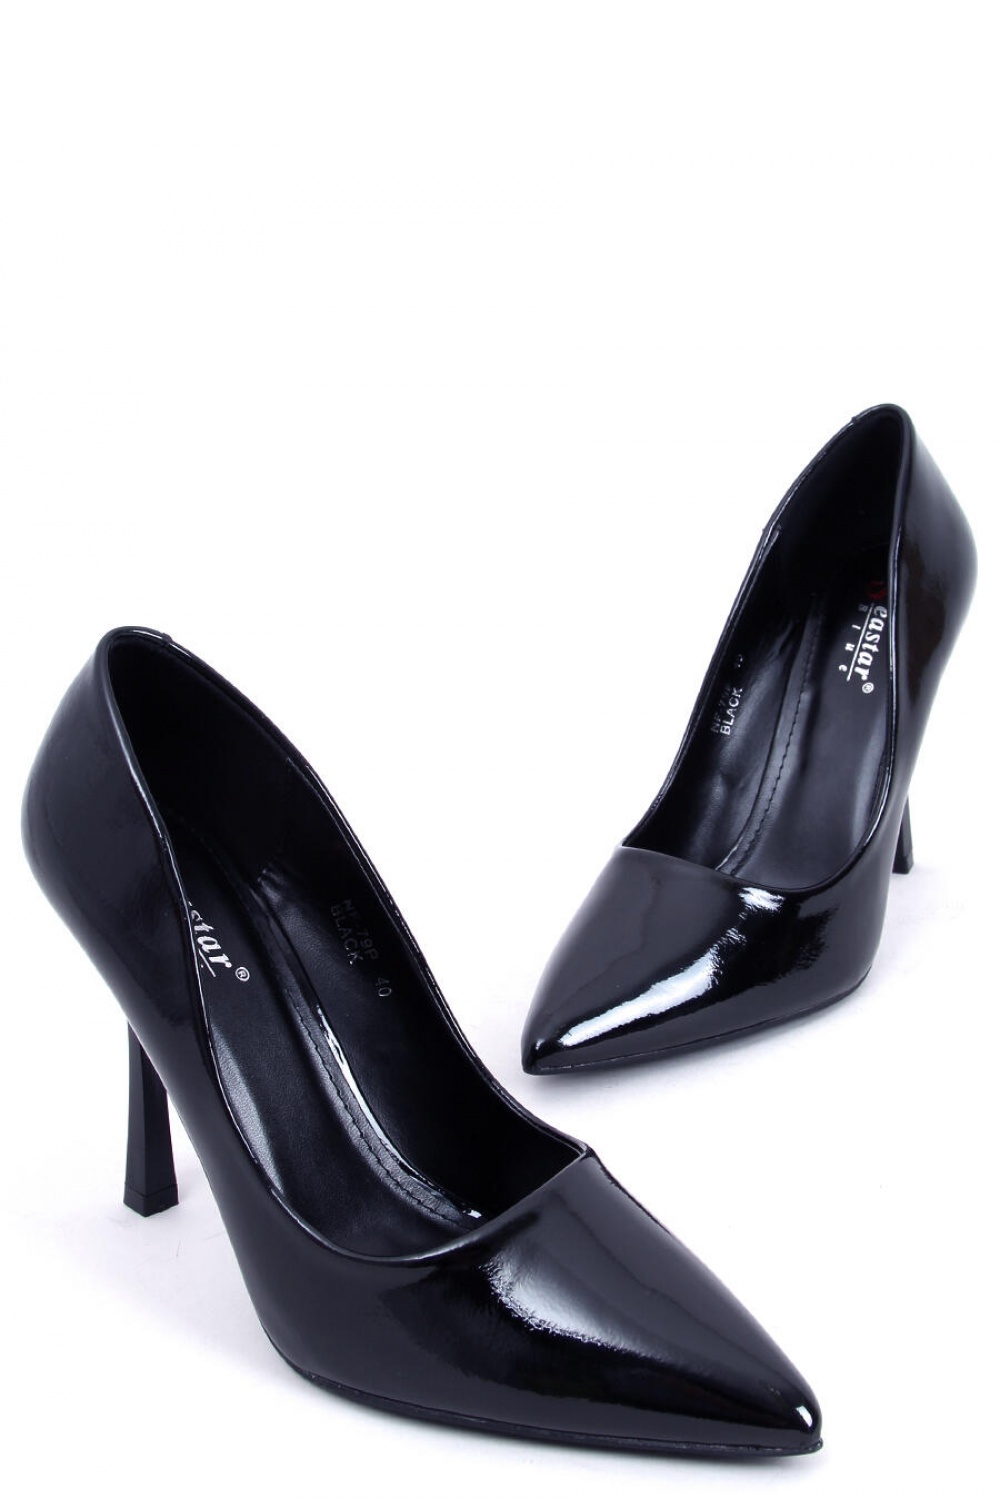 High heels model 172824 Inello